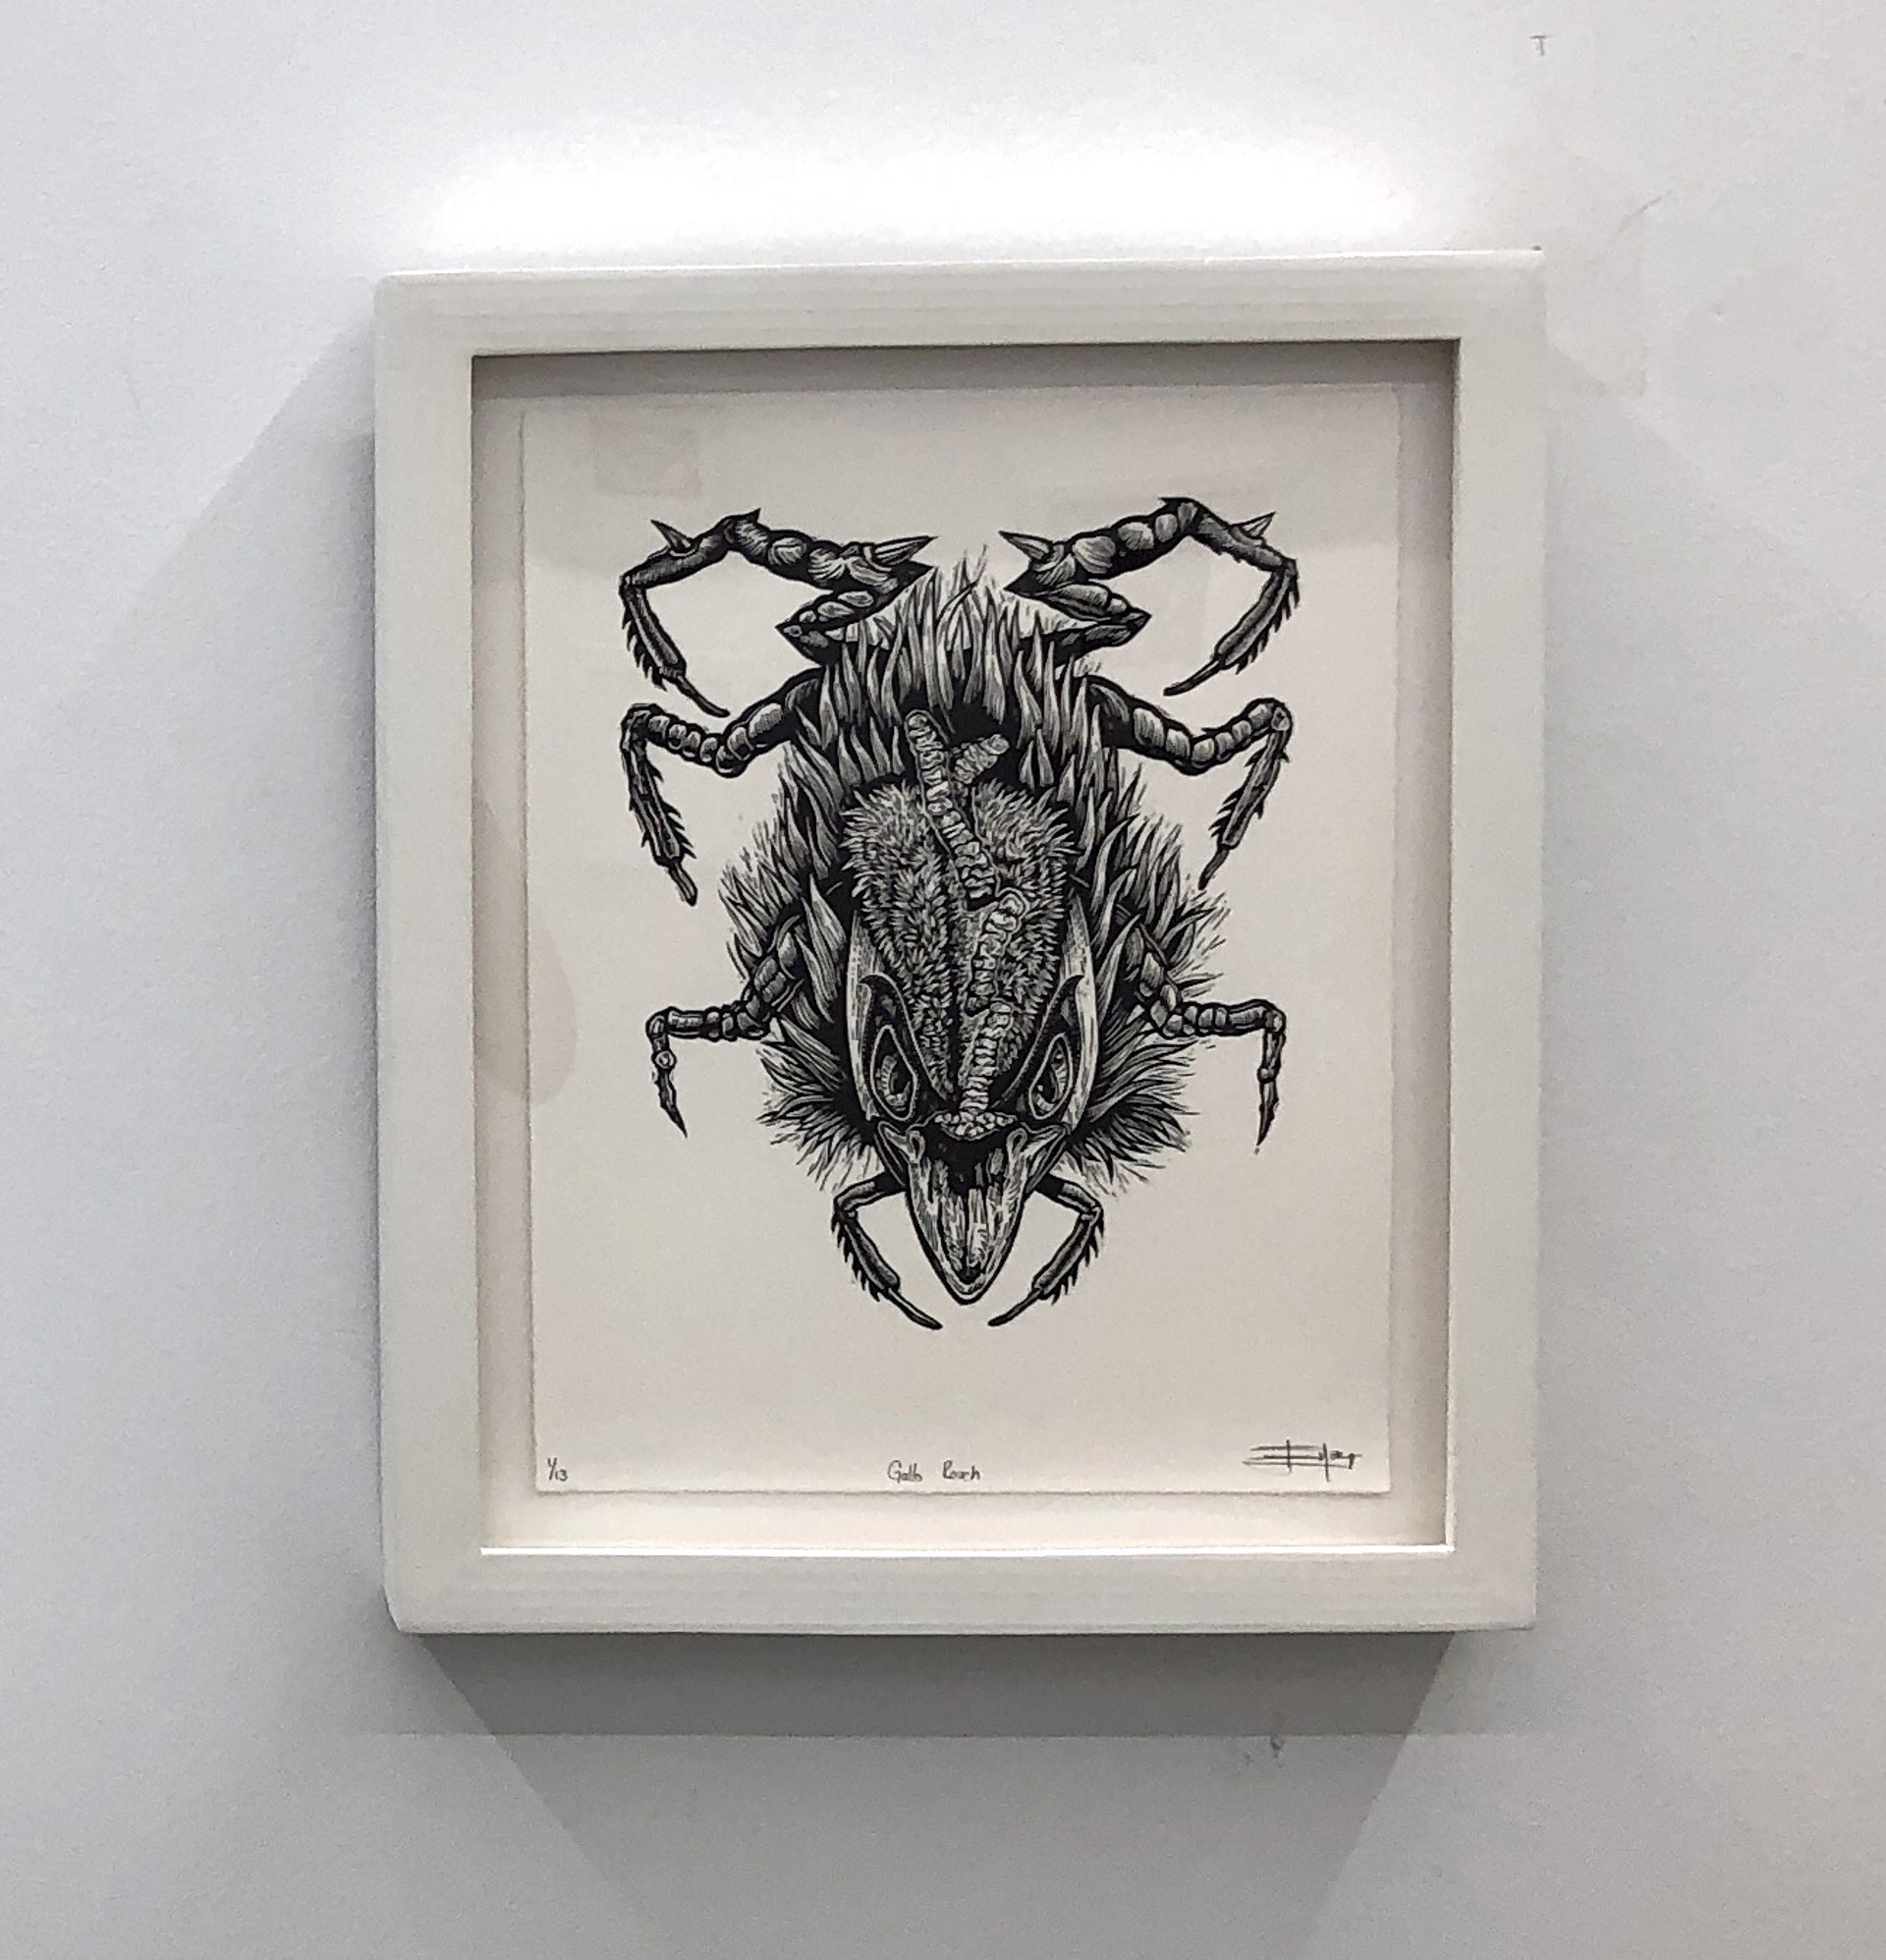 Gallo Roach (Rooster Roach) by Juan de Dios Mora